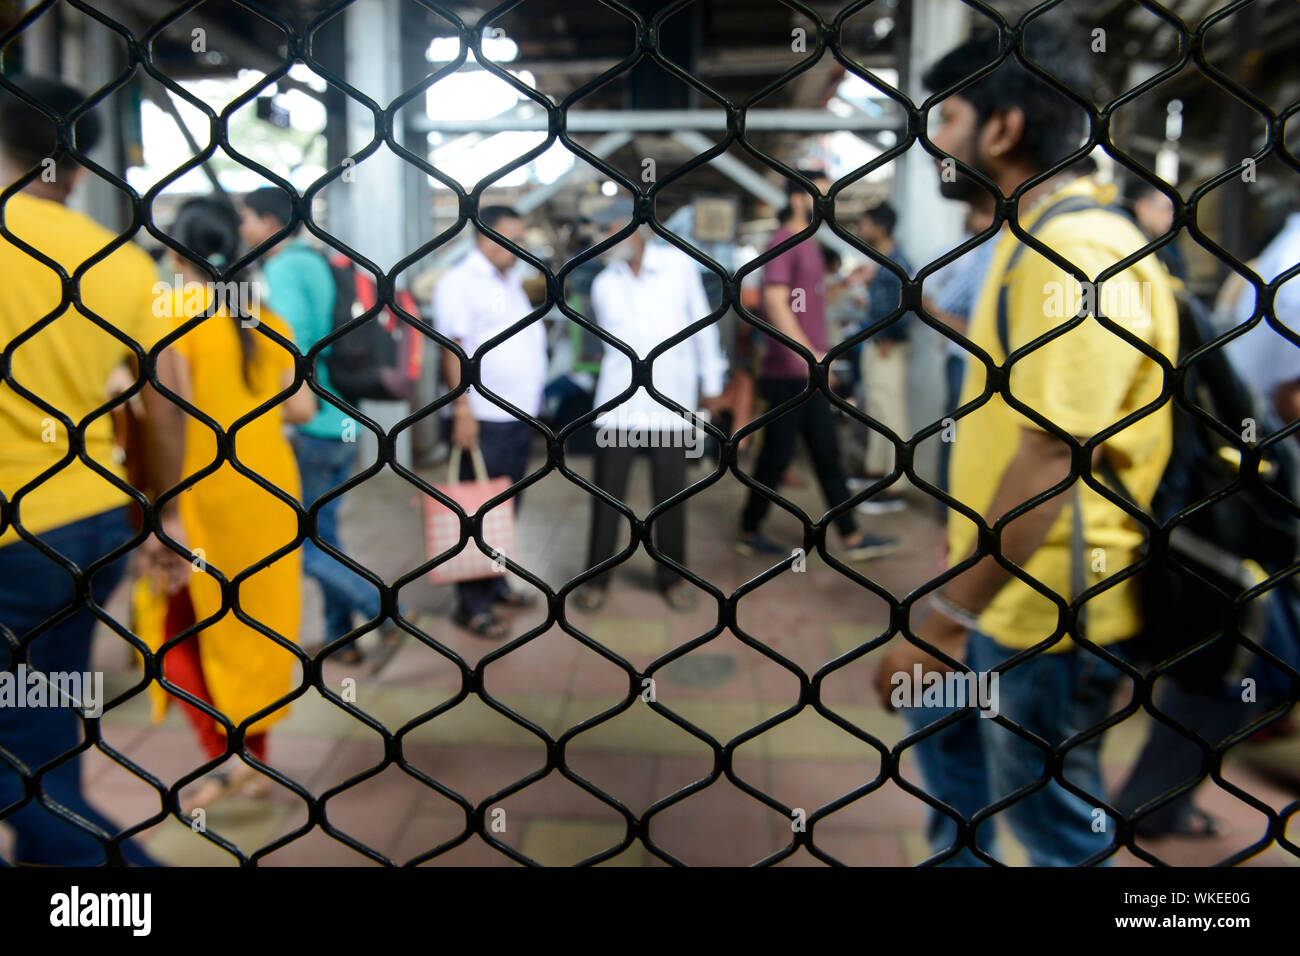 INDE, Mumbai, gare de banlieue de train de banlieue Western Railway WR, Voyage de banlieue entre les suburbans et le centre-ville, vue de la fenêtre de train barré, beaucoup de passagers sur la plate-forme Banque D'Images